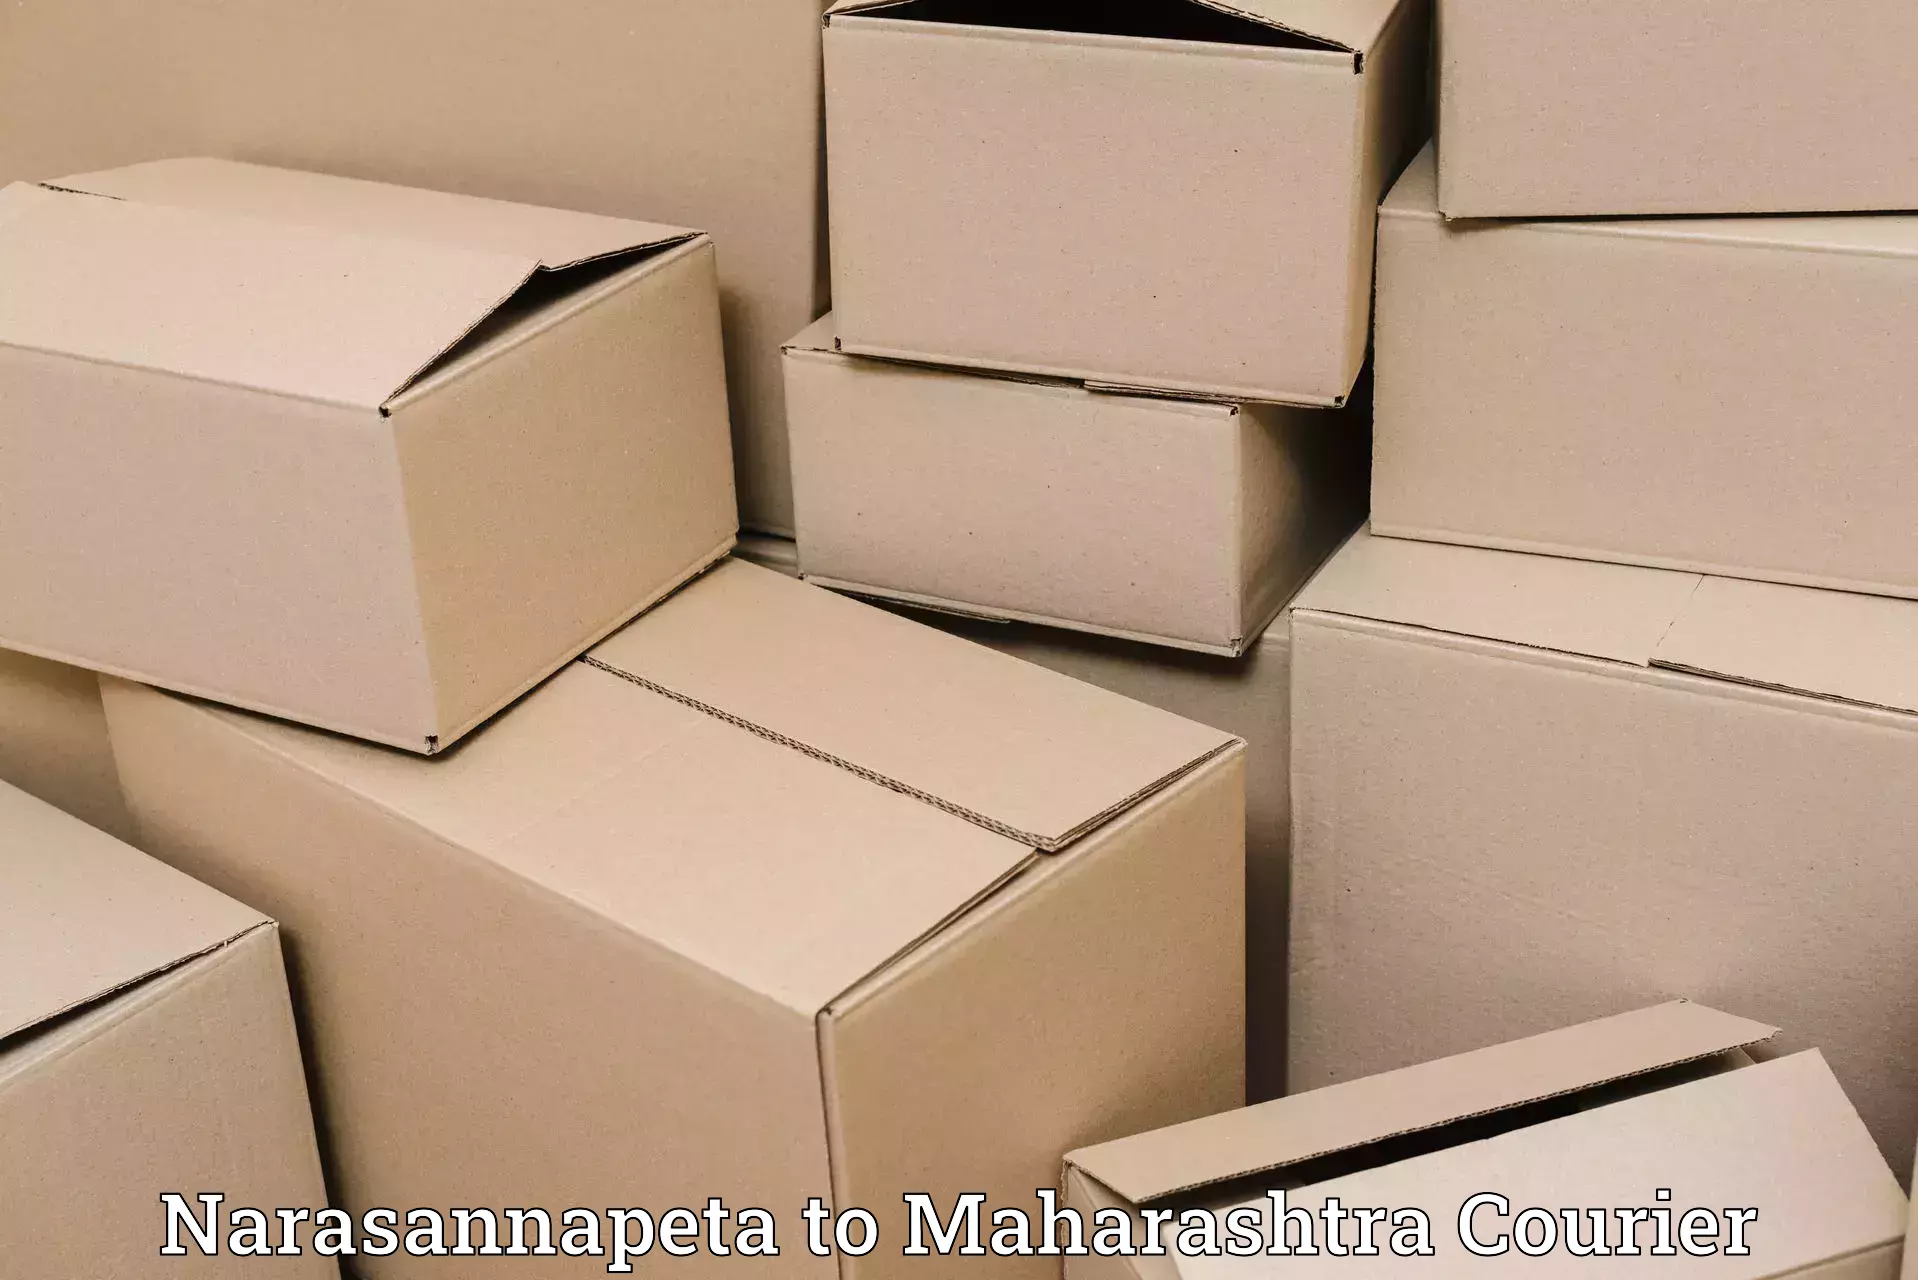 Seamless shipping experience Narasannapeta to Maharashtra